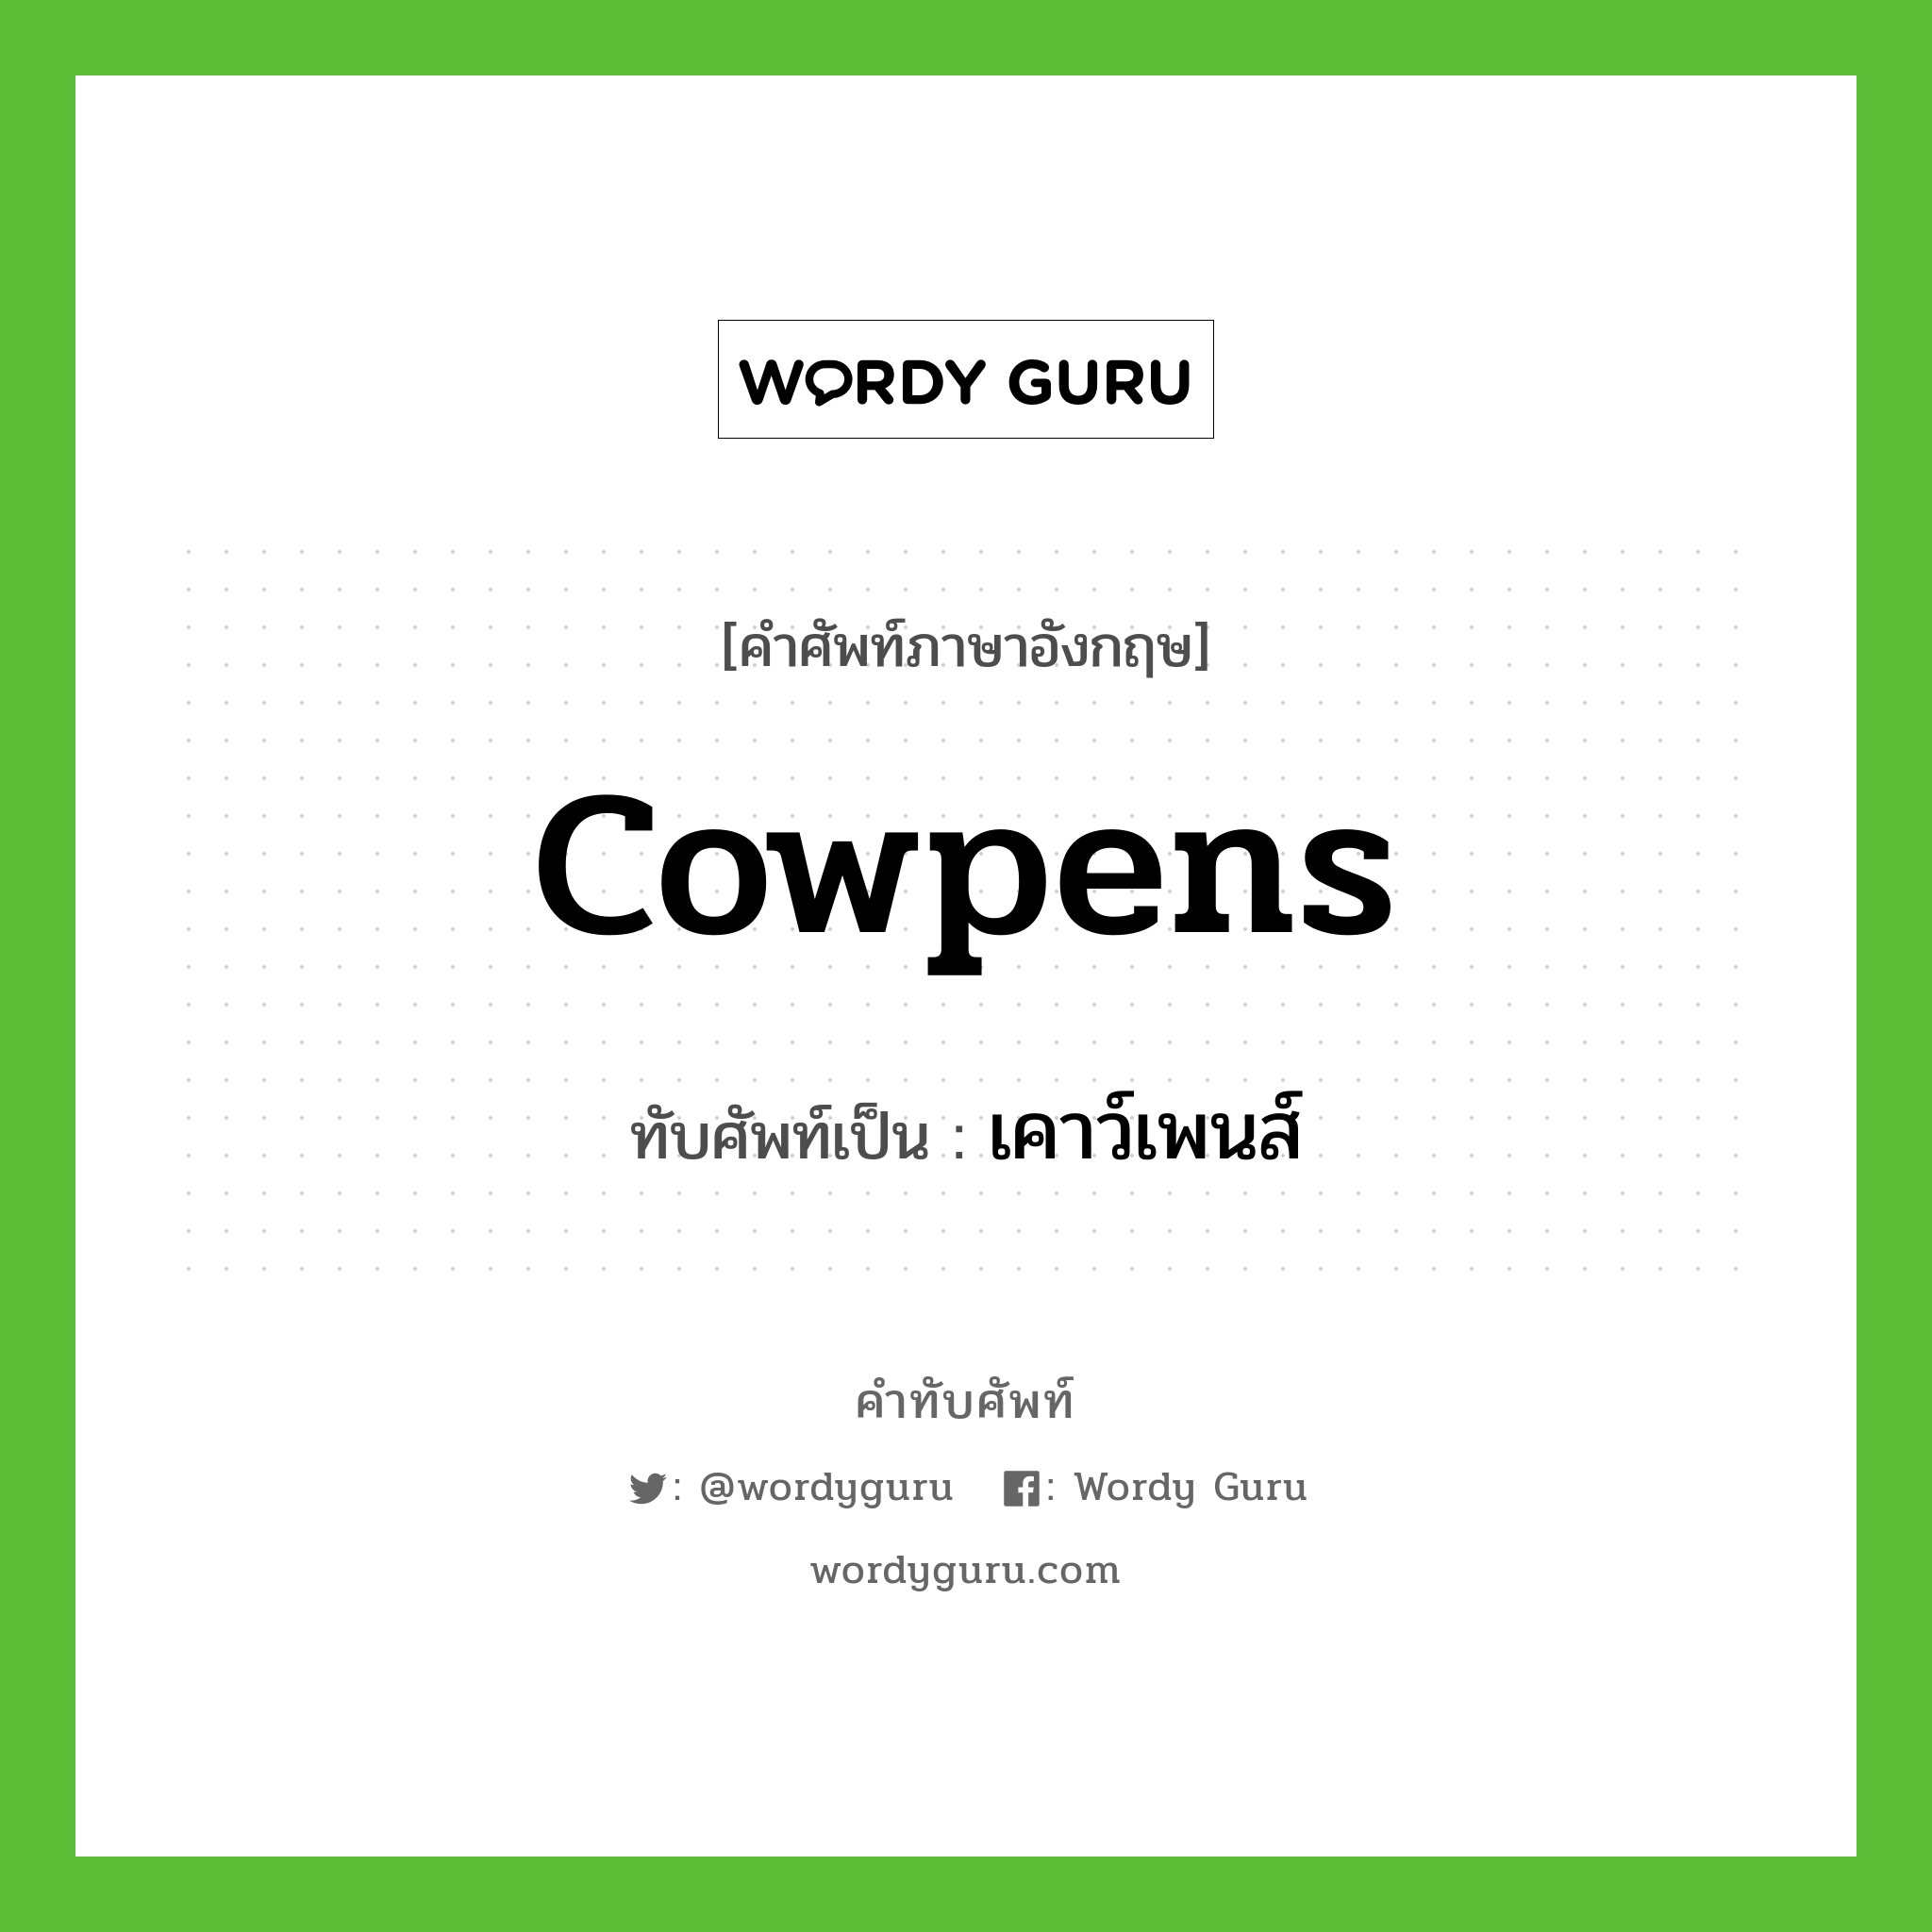 Cowpens เขียนเป็นคำไทยว่าอะไร?, คำศัพท์ภาษาอังกฤษ Cowpens ทับศัพท์เป็น เคาว์เพนส์